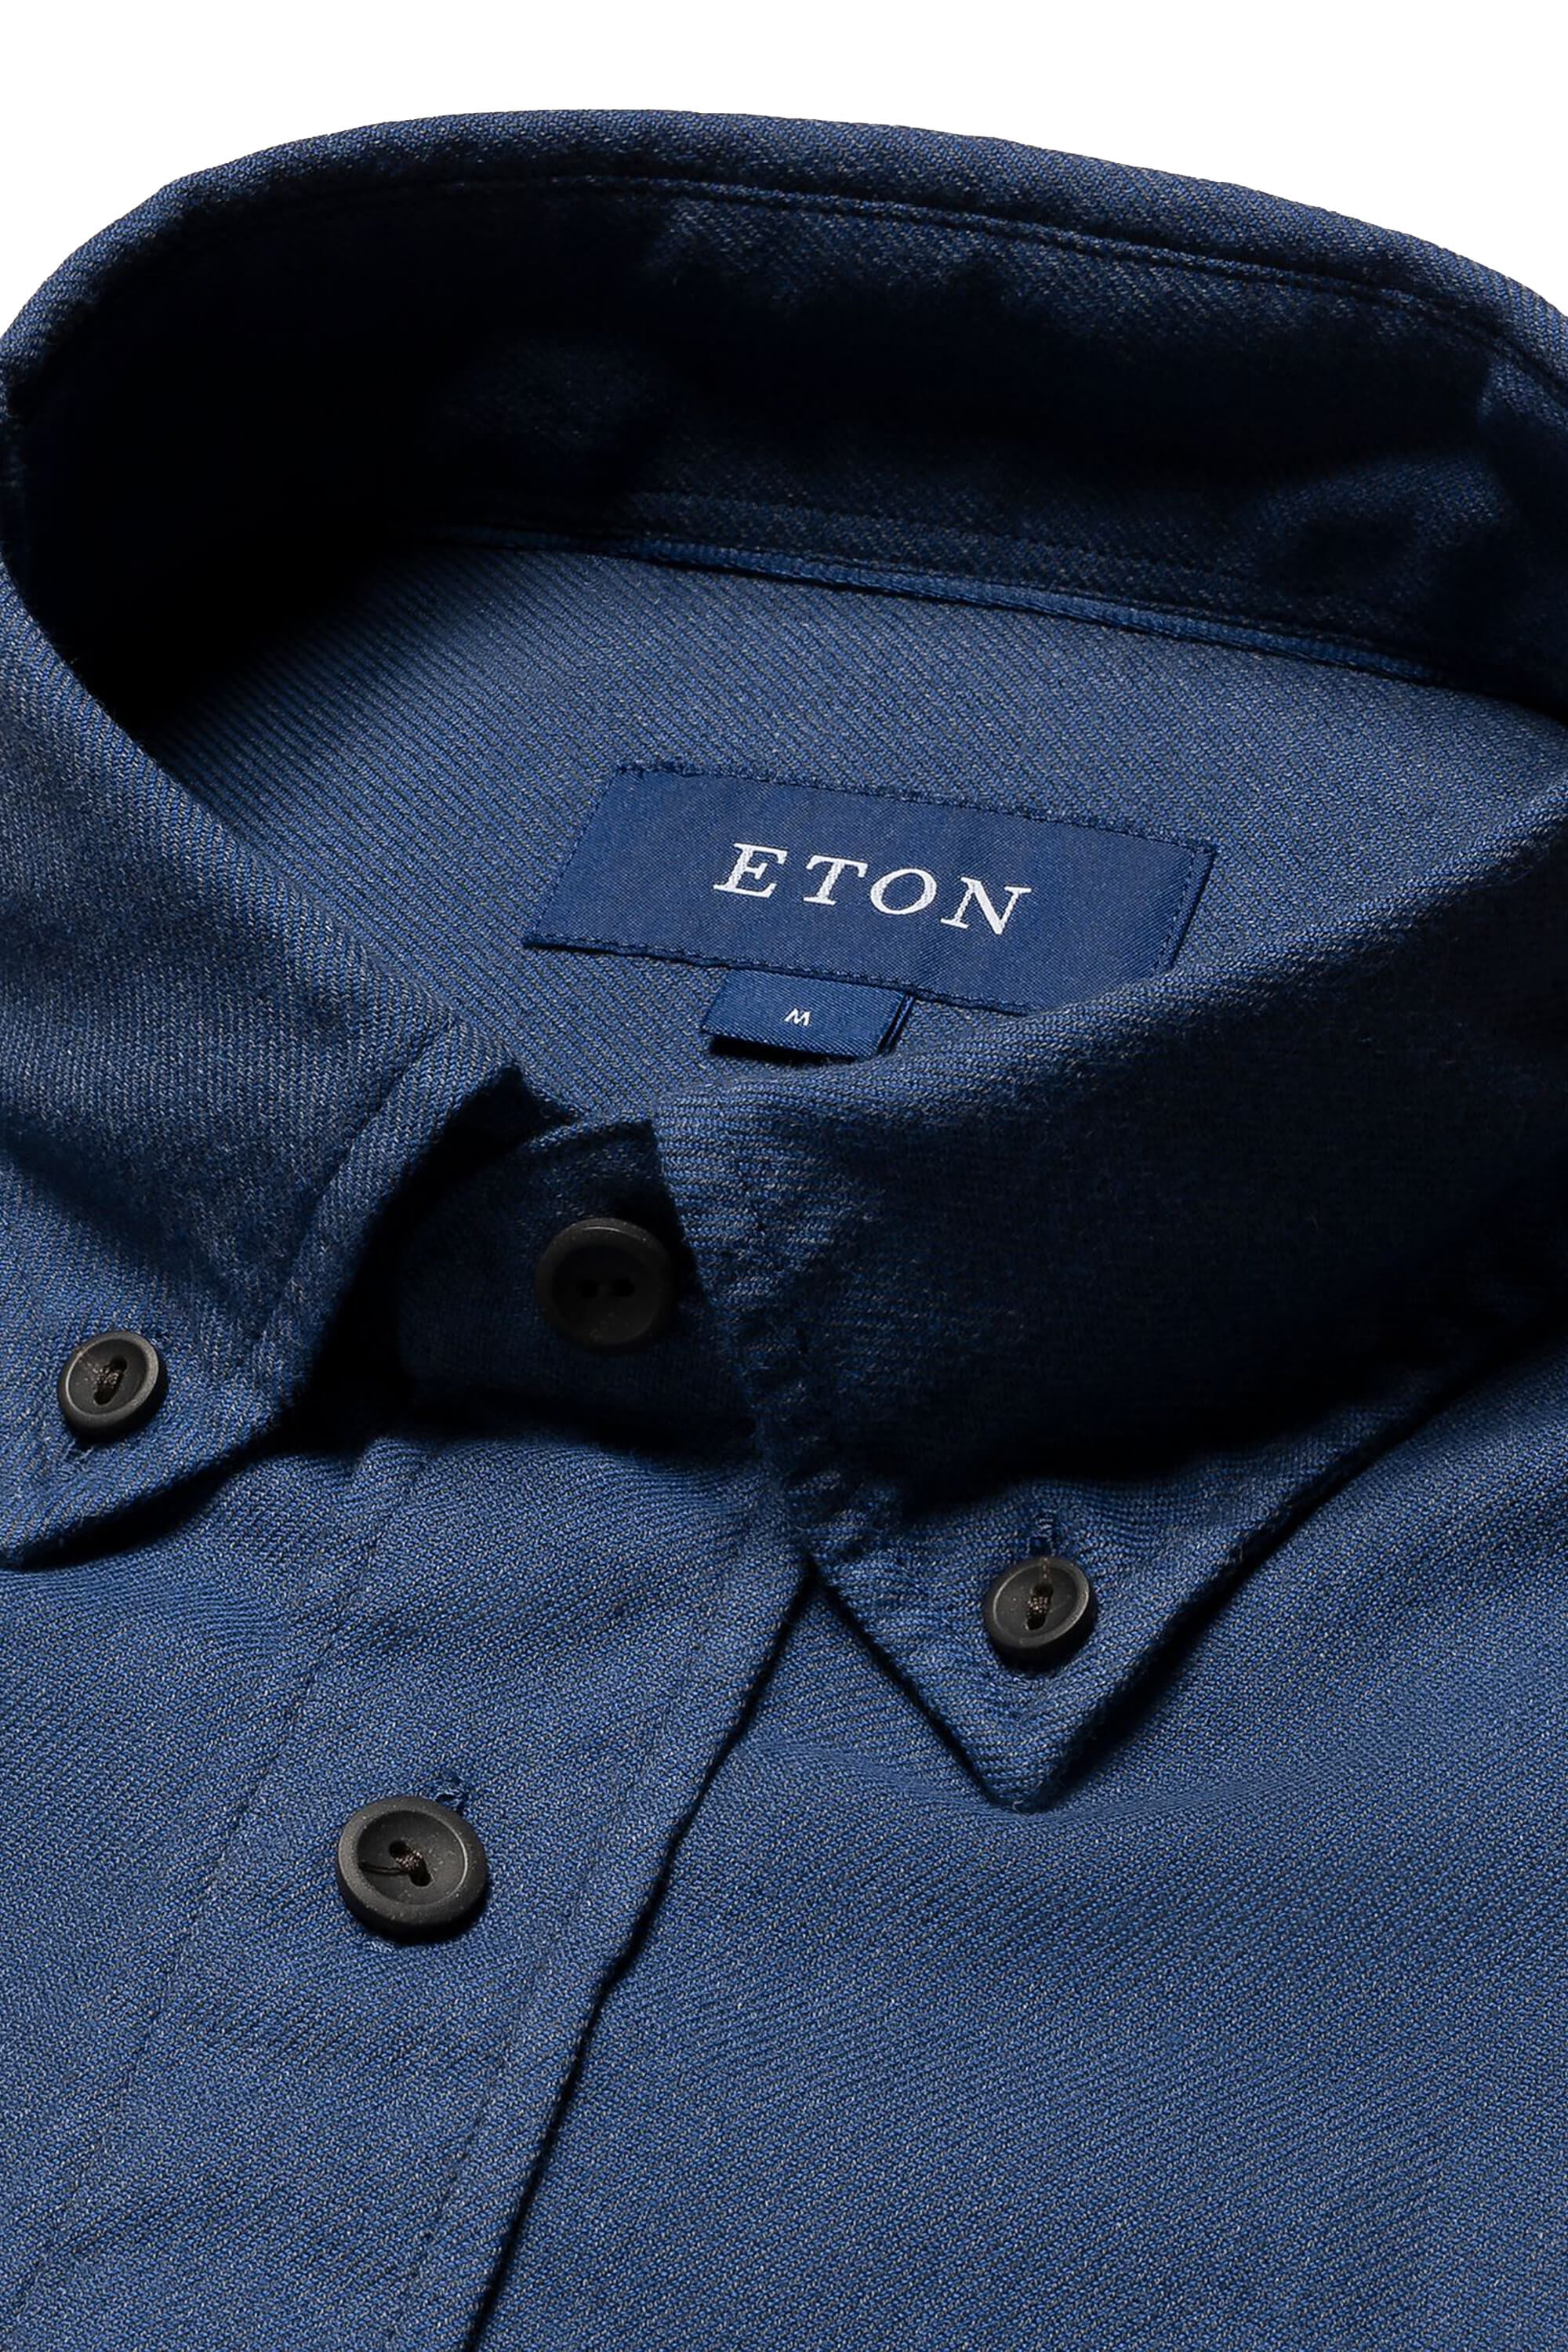 Eton Dark Blue Twill Flannel Shirt